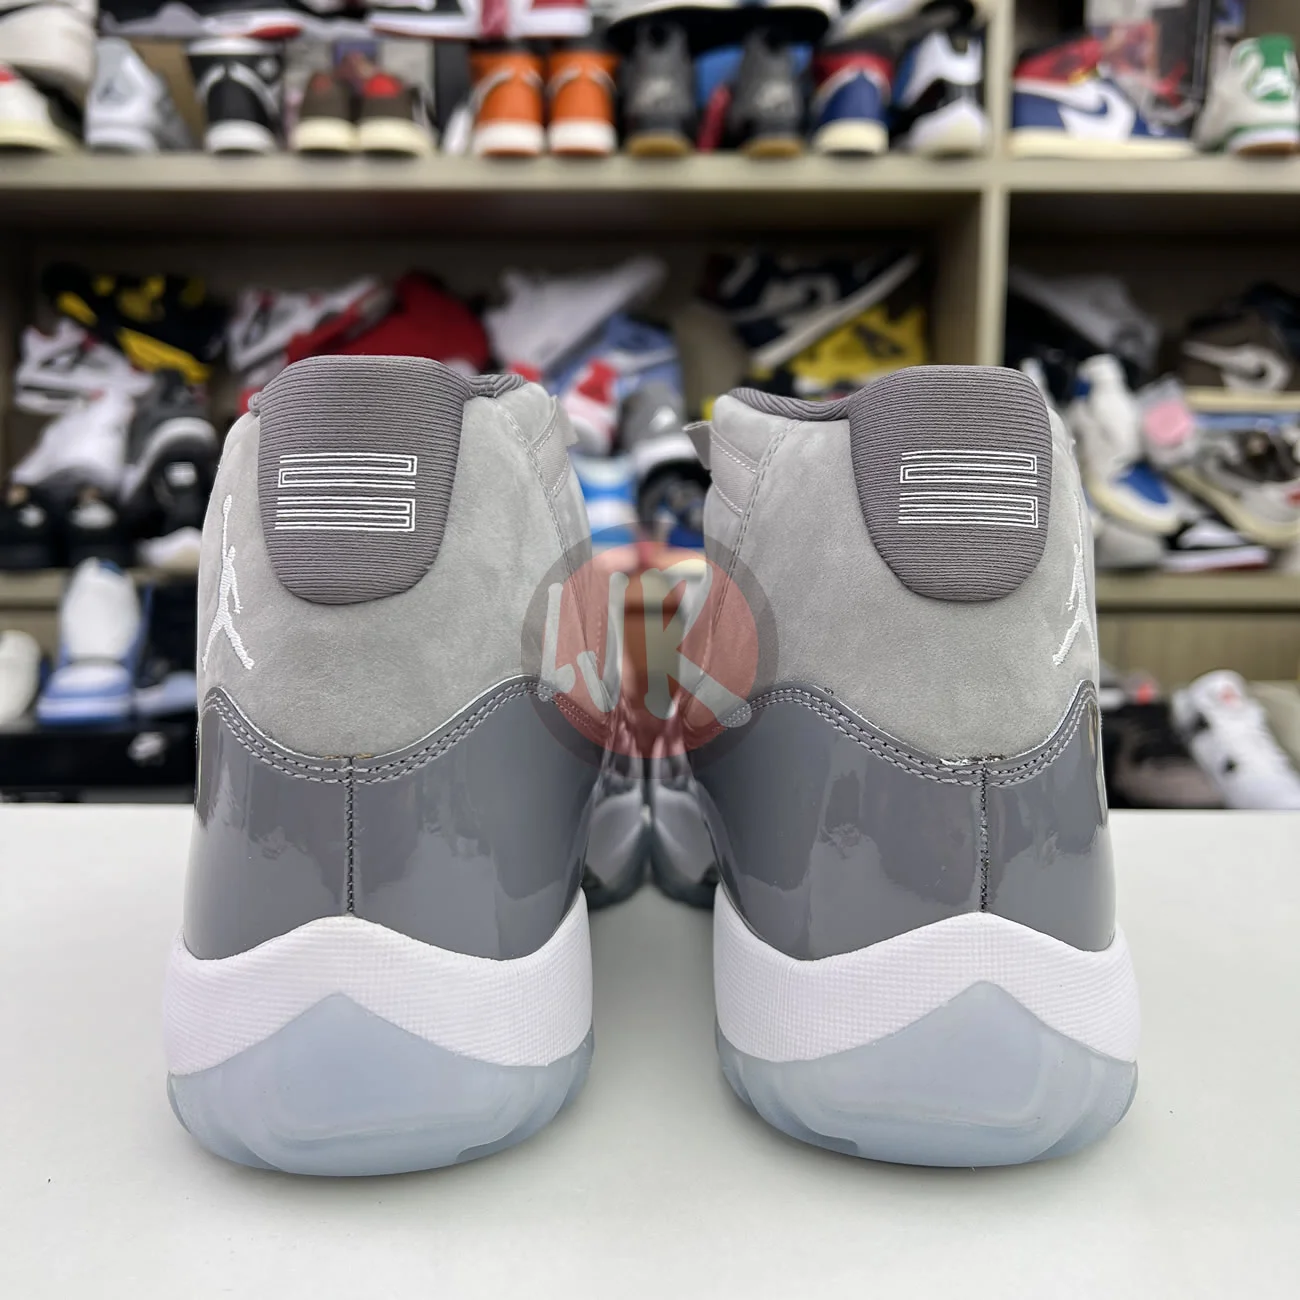 Air Jordan 11 Retro Cool Grey 2021 Ct8012 005 Ljr Sneakers (2) - bc-ljr.com